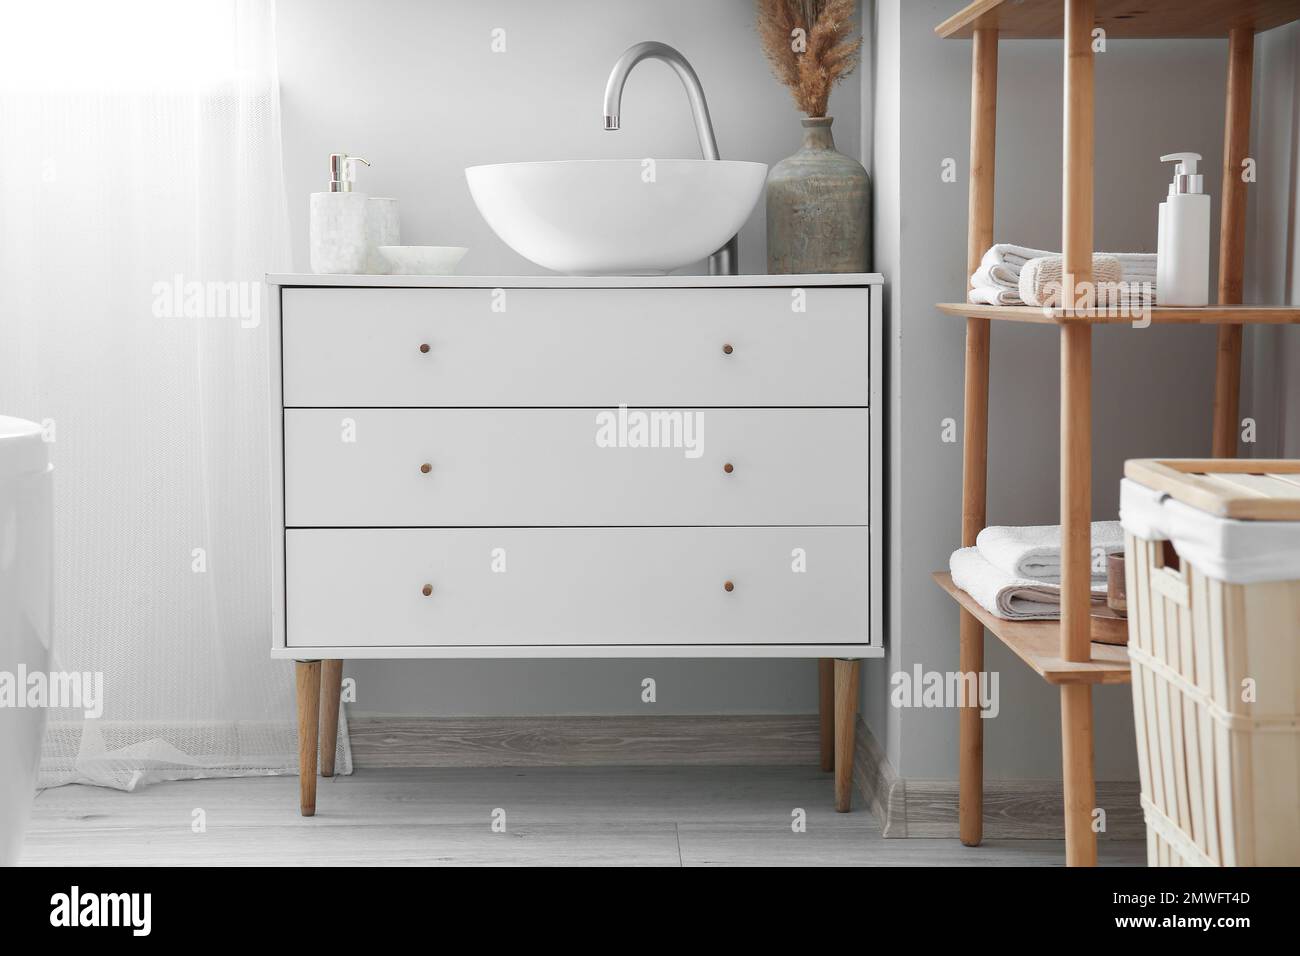 Kommode mit Waschbecken und Vase im hellen Badezimmer Stockfotografie -  Alamy